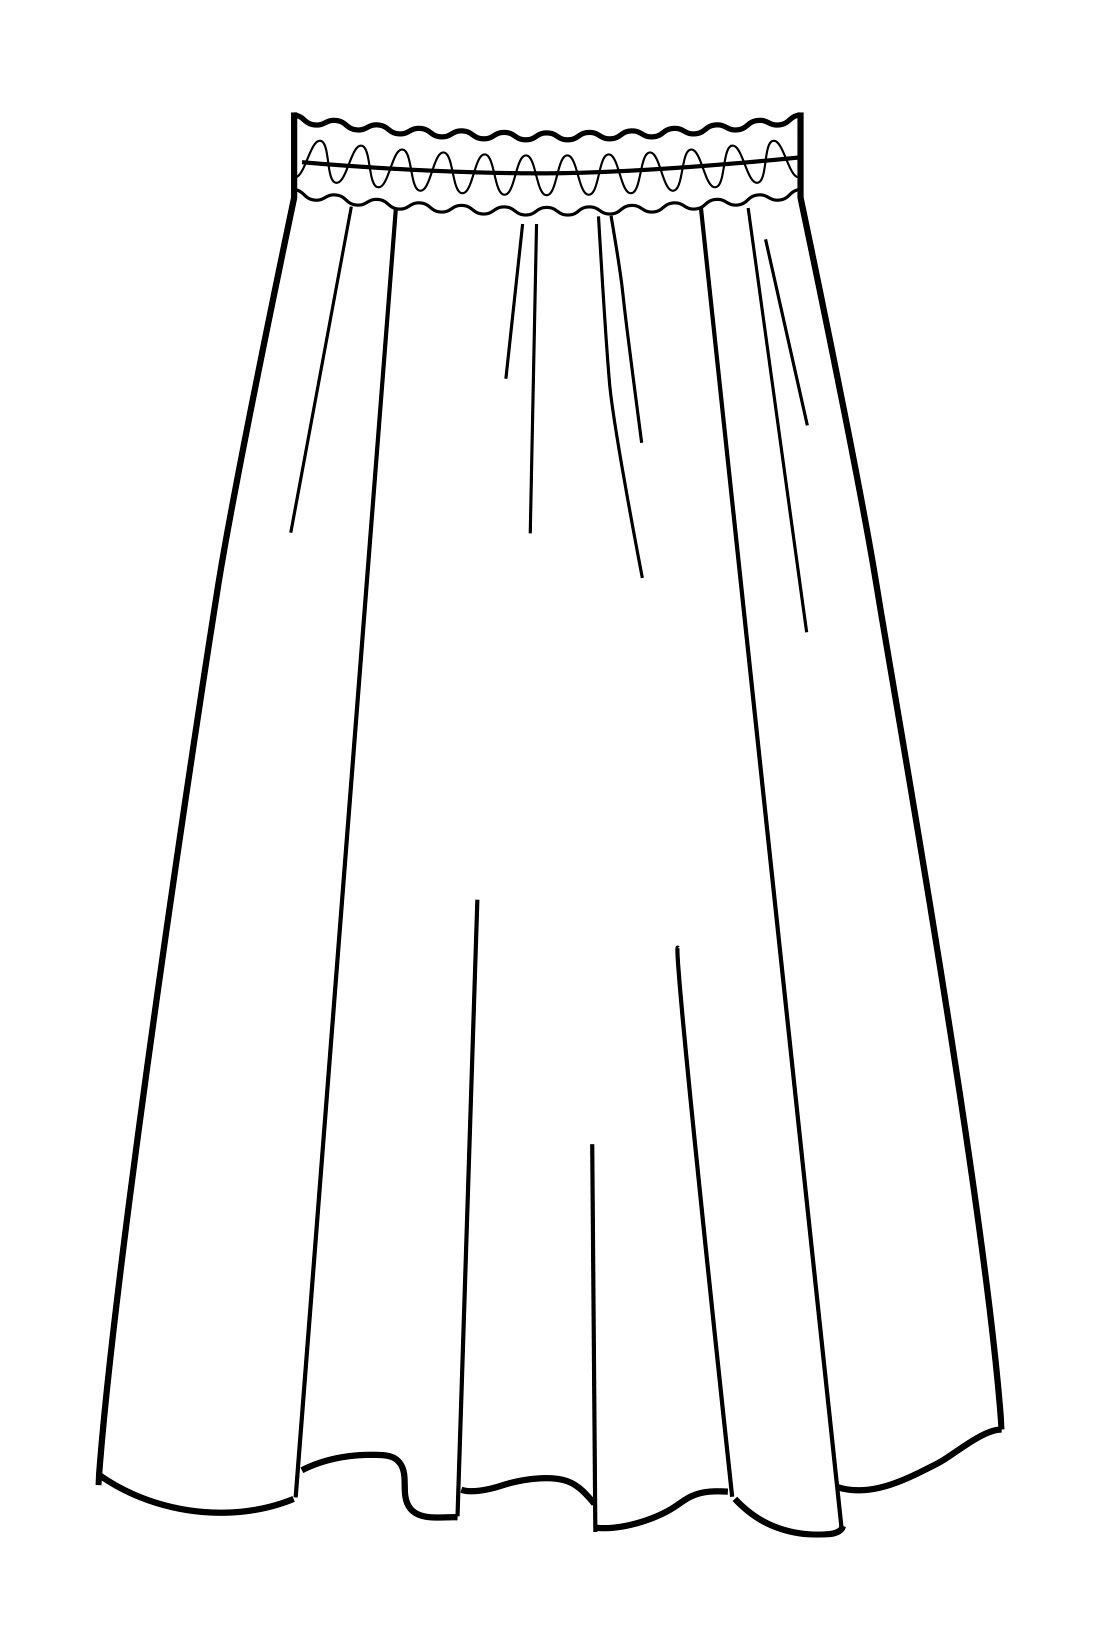 Real Stock|IEDIT[イディット] Natsu Yamaguchiコラボ にじみ柄のニュアンスが大人っぽい モードに着たいフラワースカート〈ネイビー〉|フロント左右と後ろ中央で切り替えたデザイン。